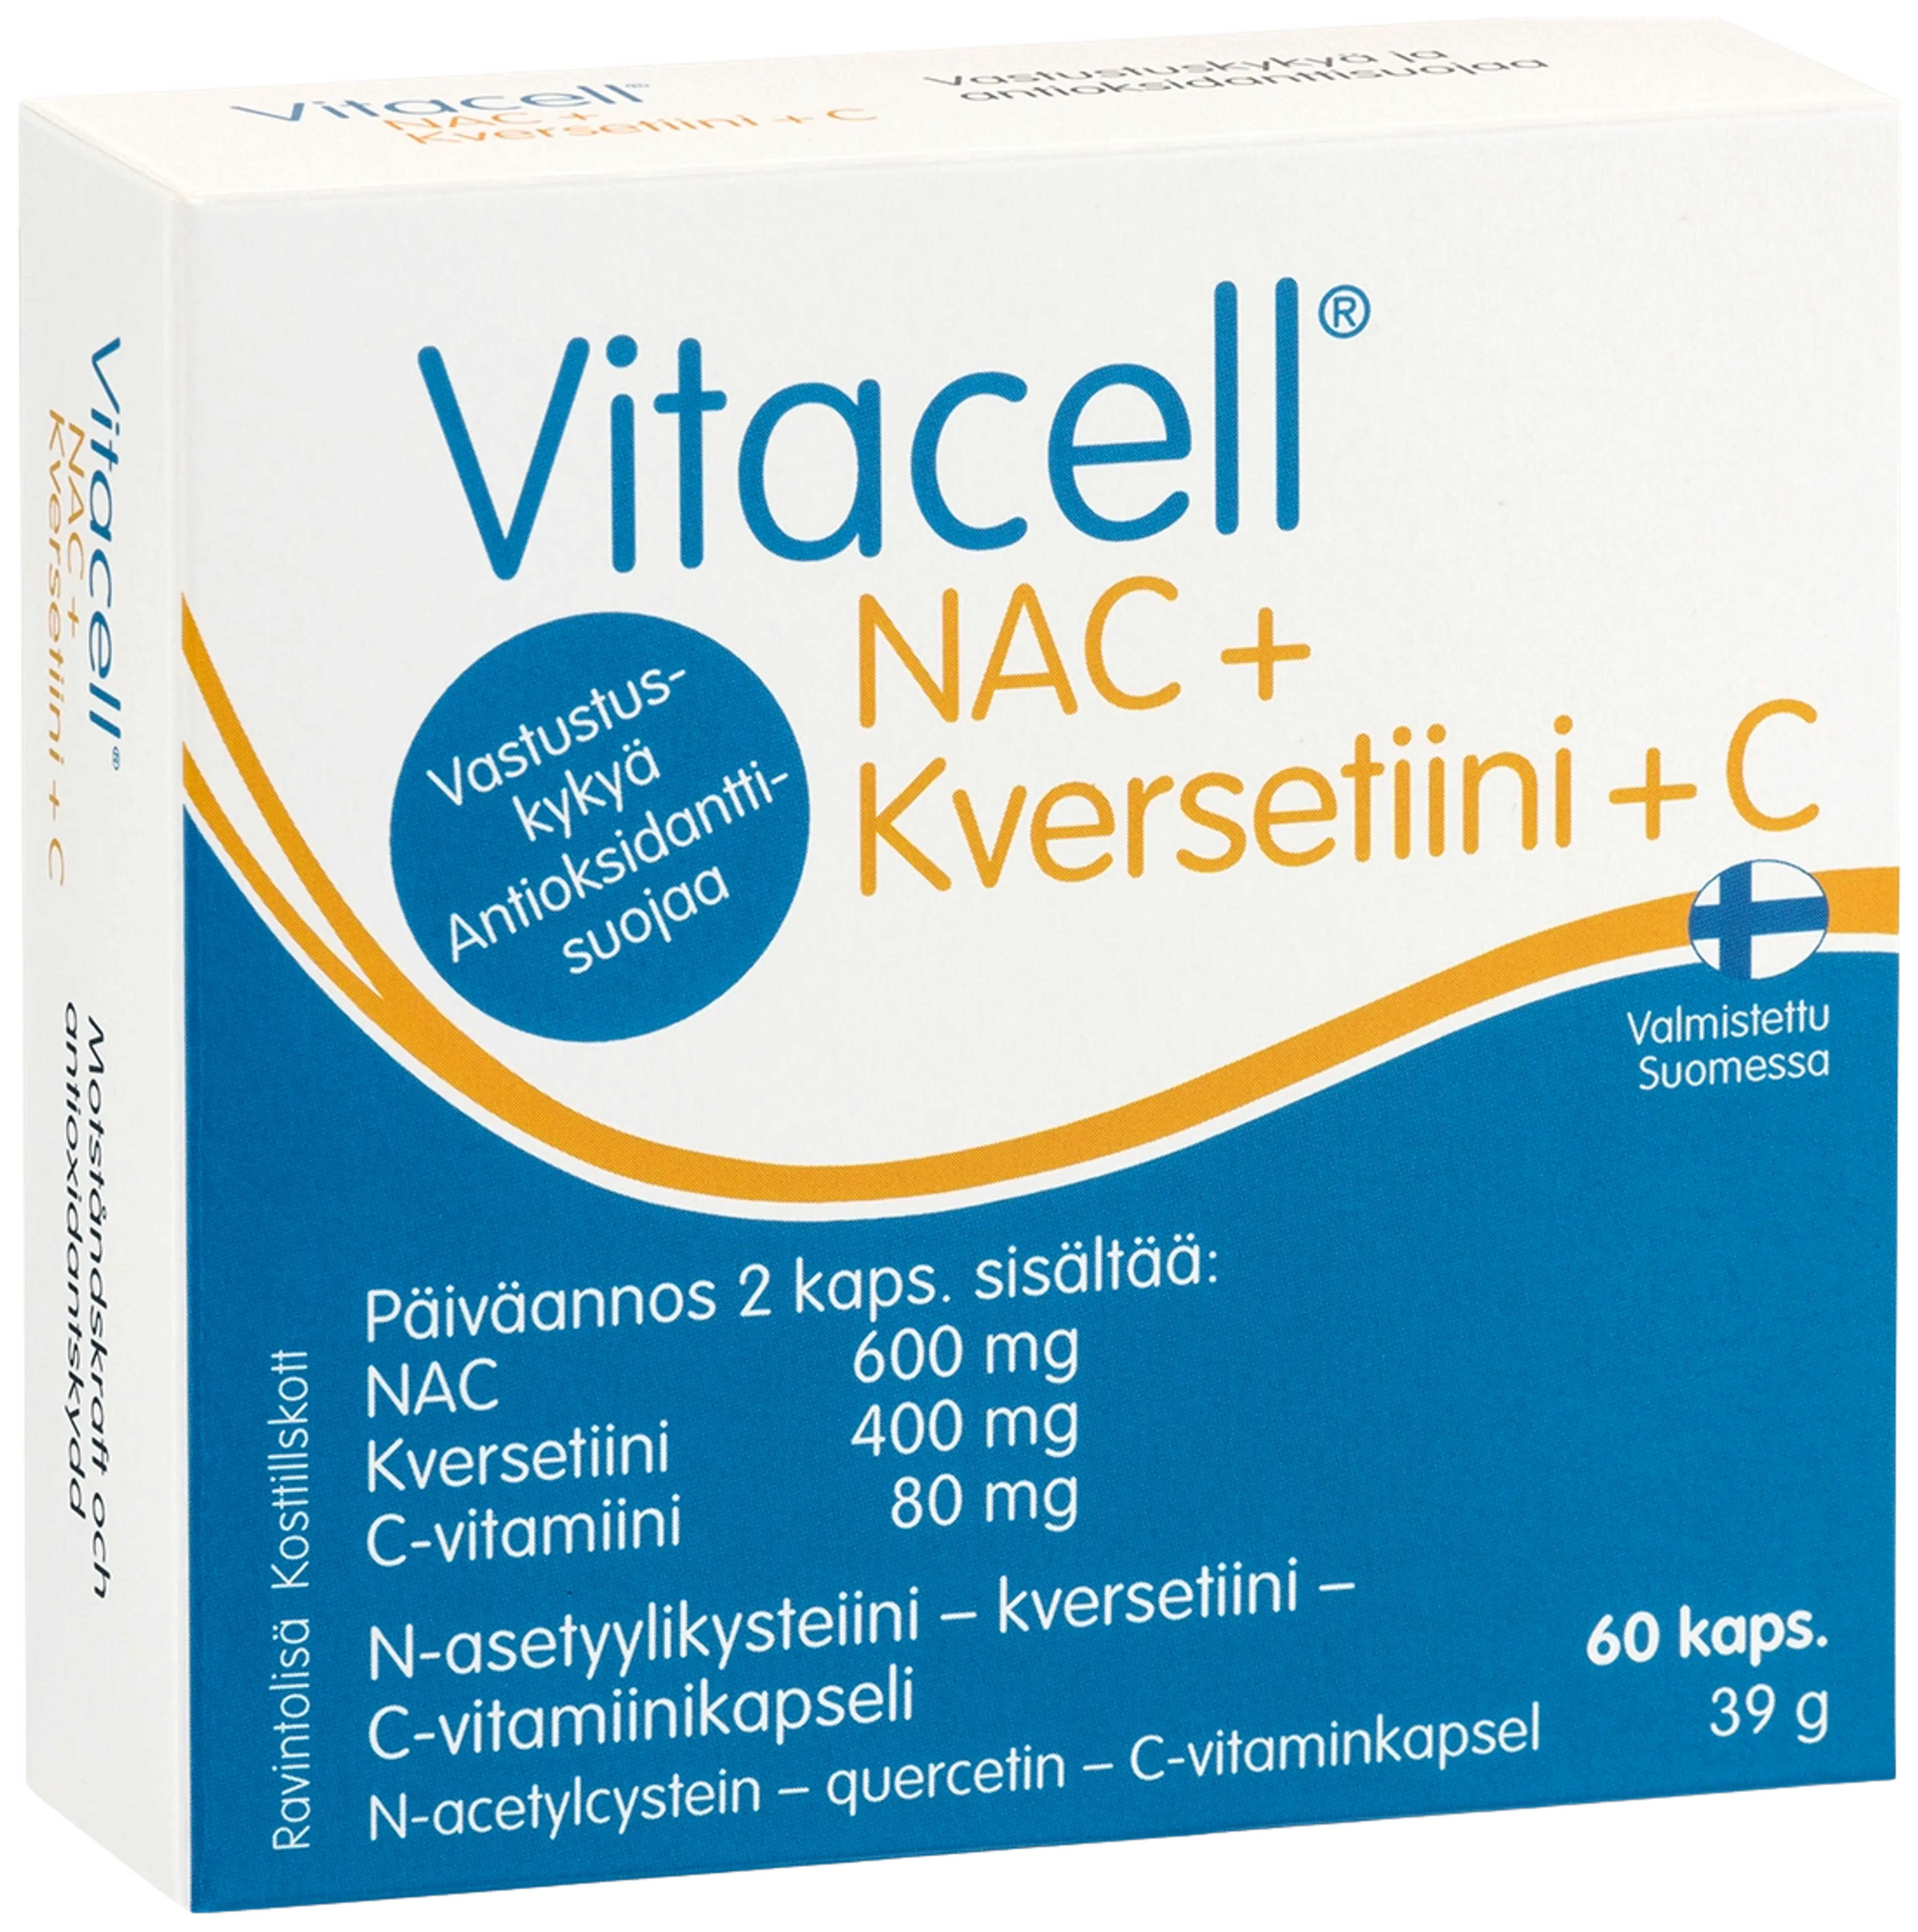 Vitacell NAC + kversetiini + C  N-asetyylikysteiini – kversetiini - C-vitamiinikapseli 60 kaps.